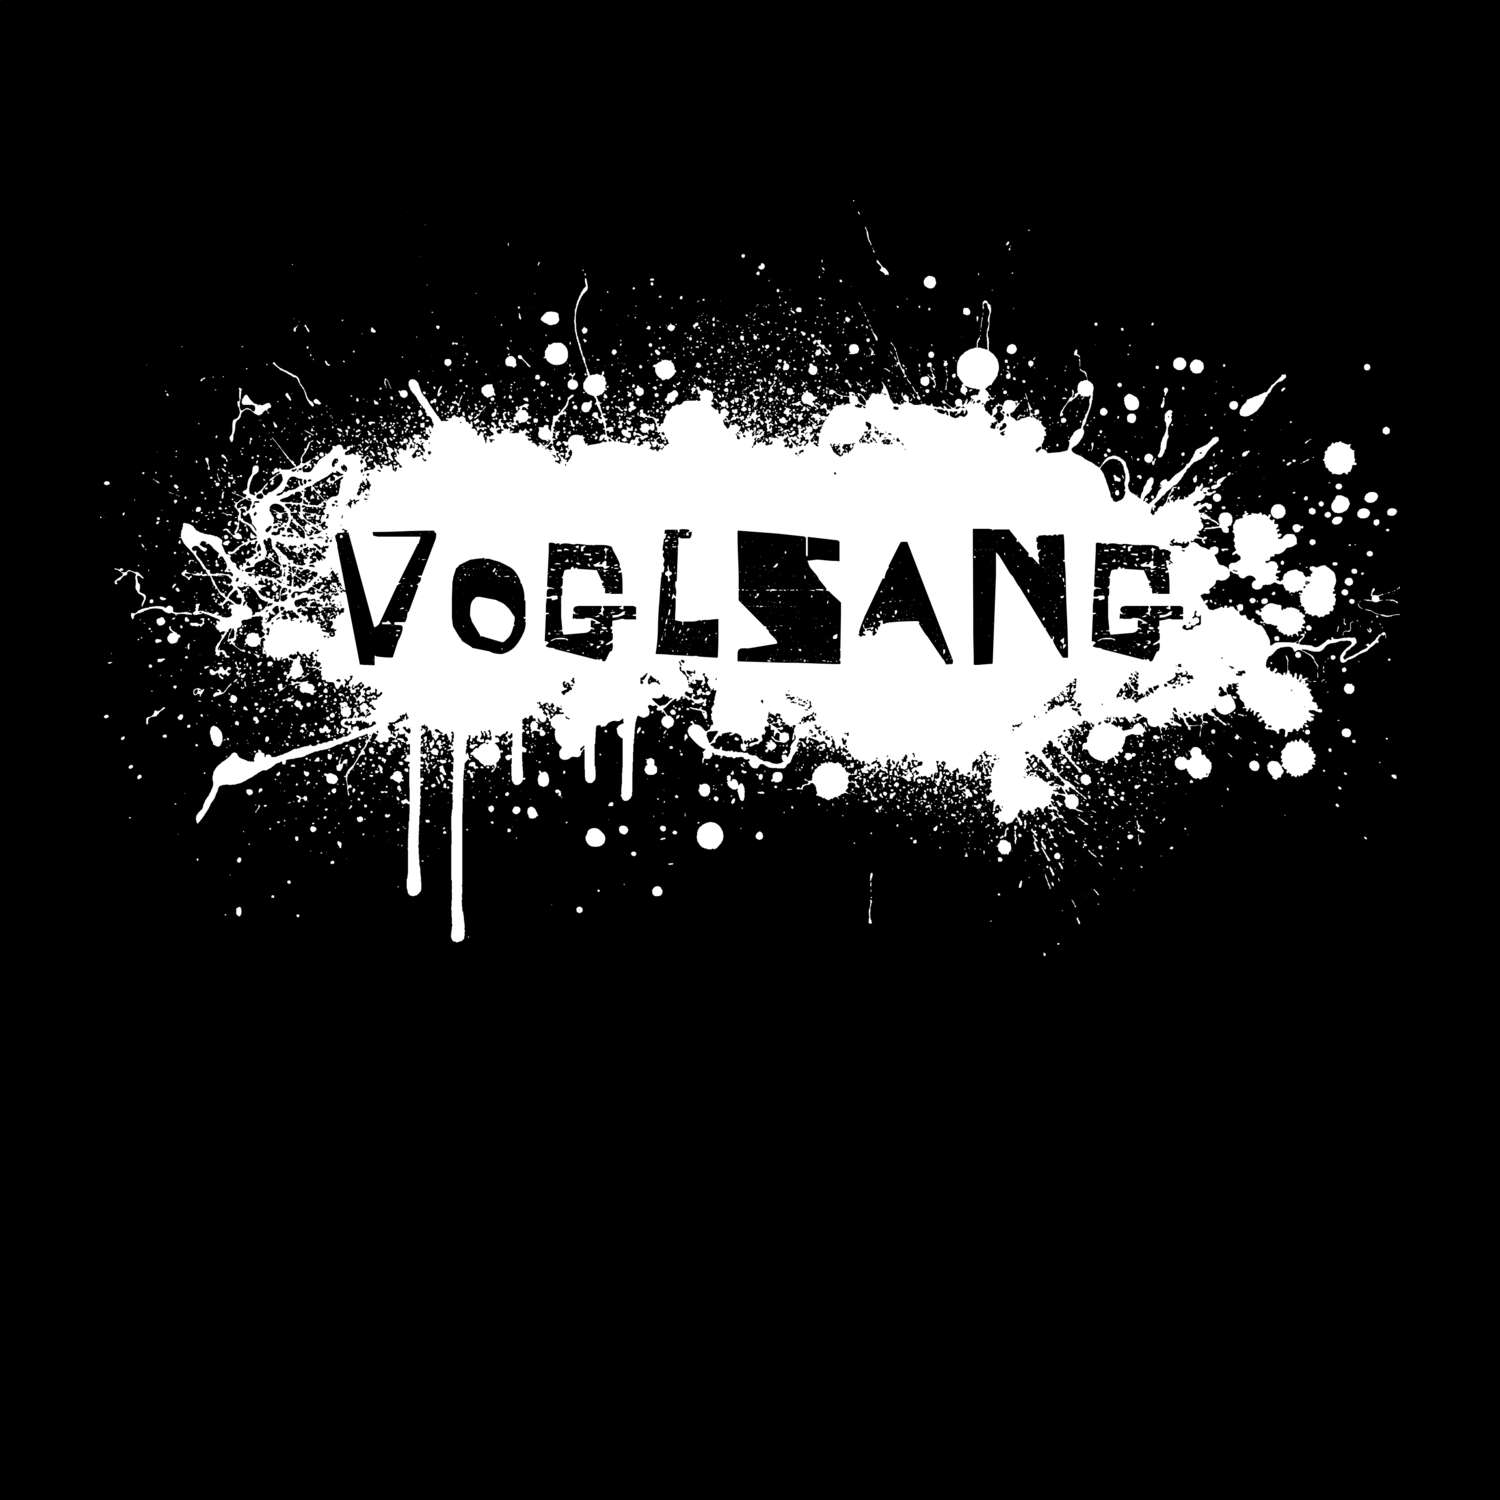 Voglsang T-Shirt »Paint Splash Punk«